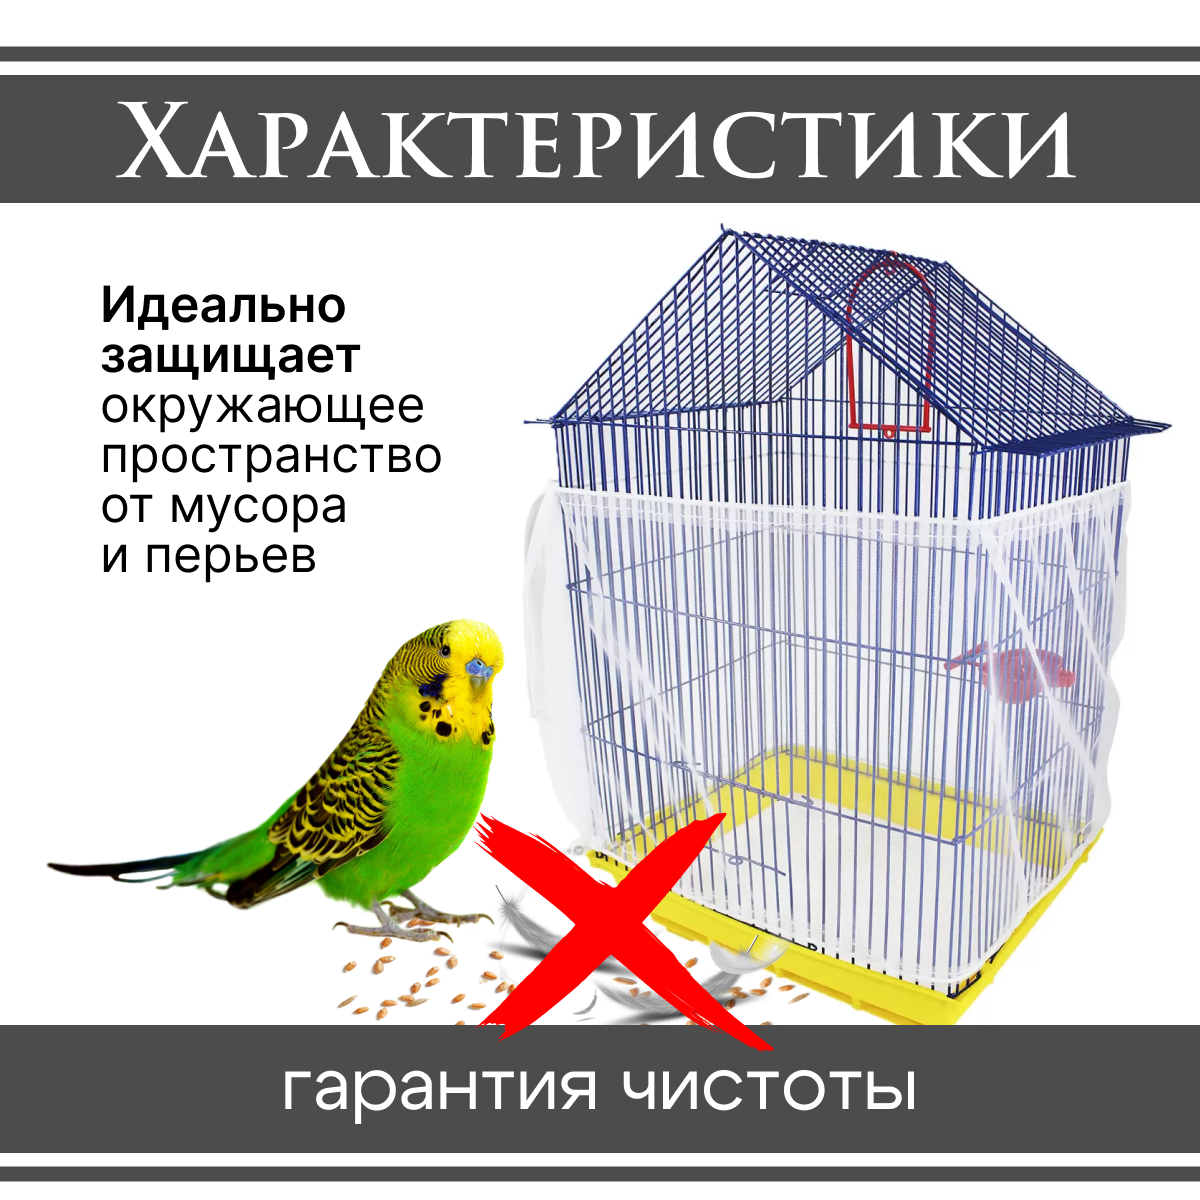 Сетка, чехол для клетки попугаев, птиц и грызунов от мусора 30*220